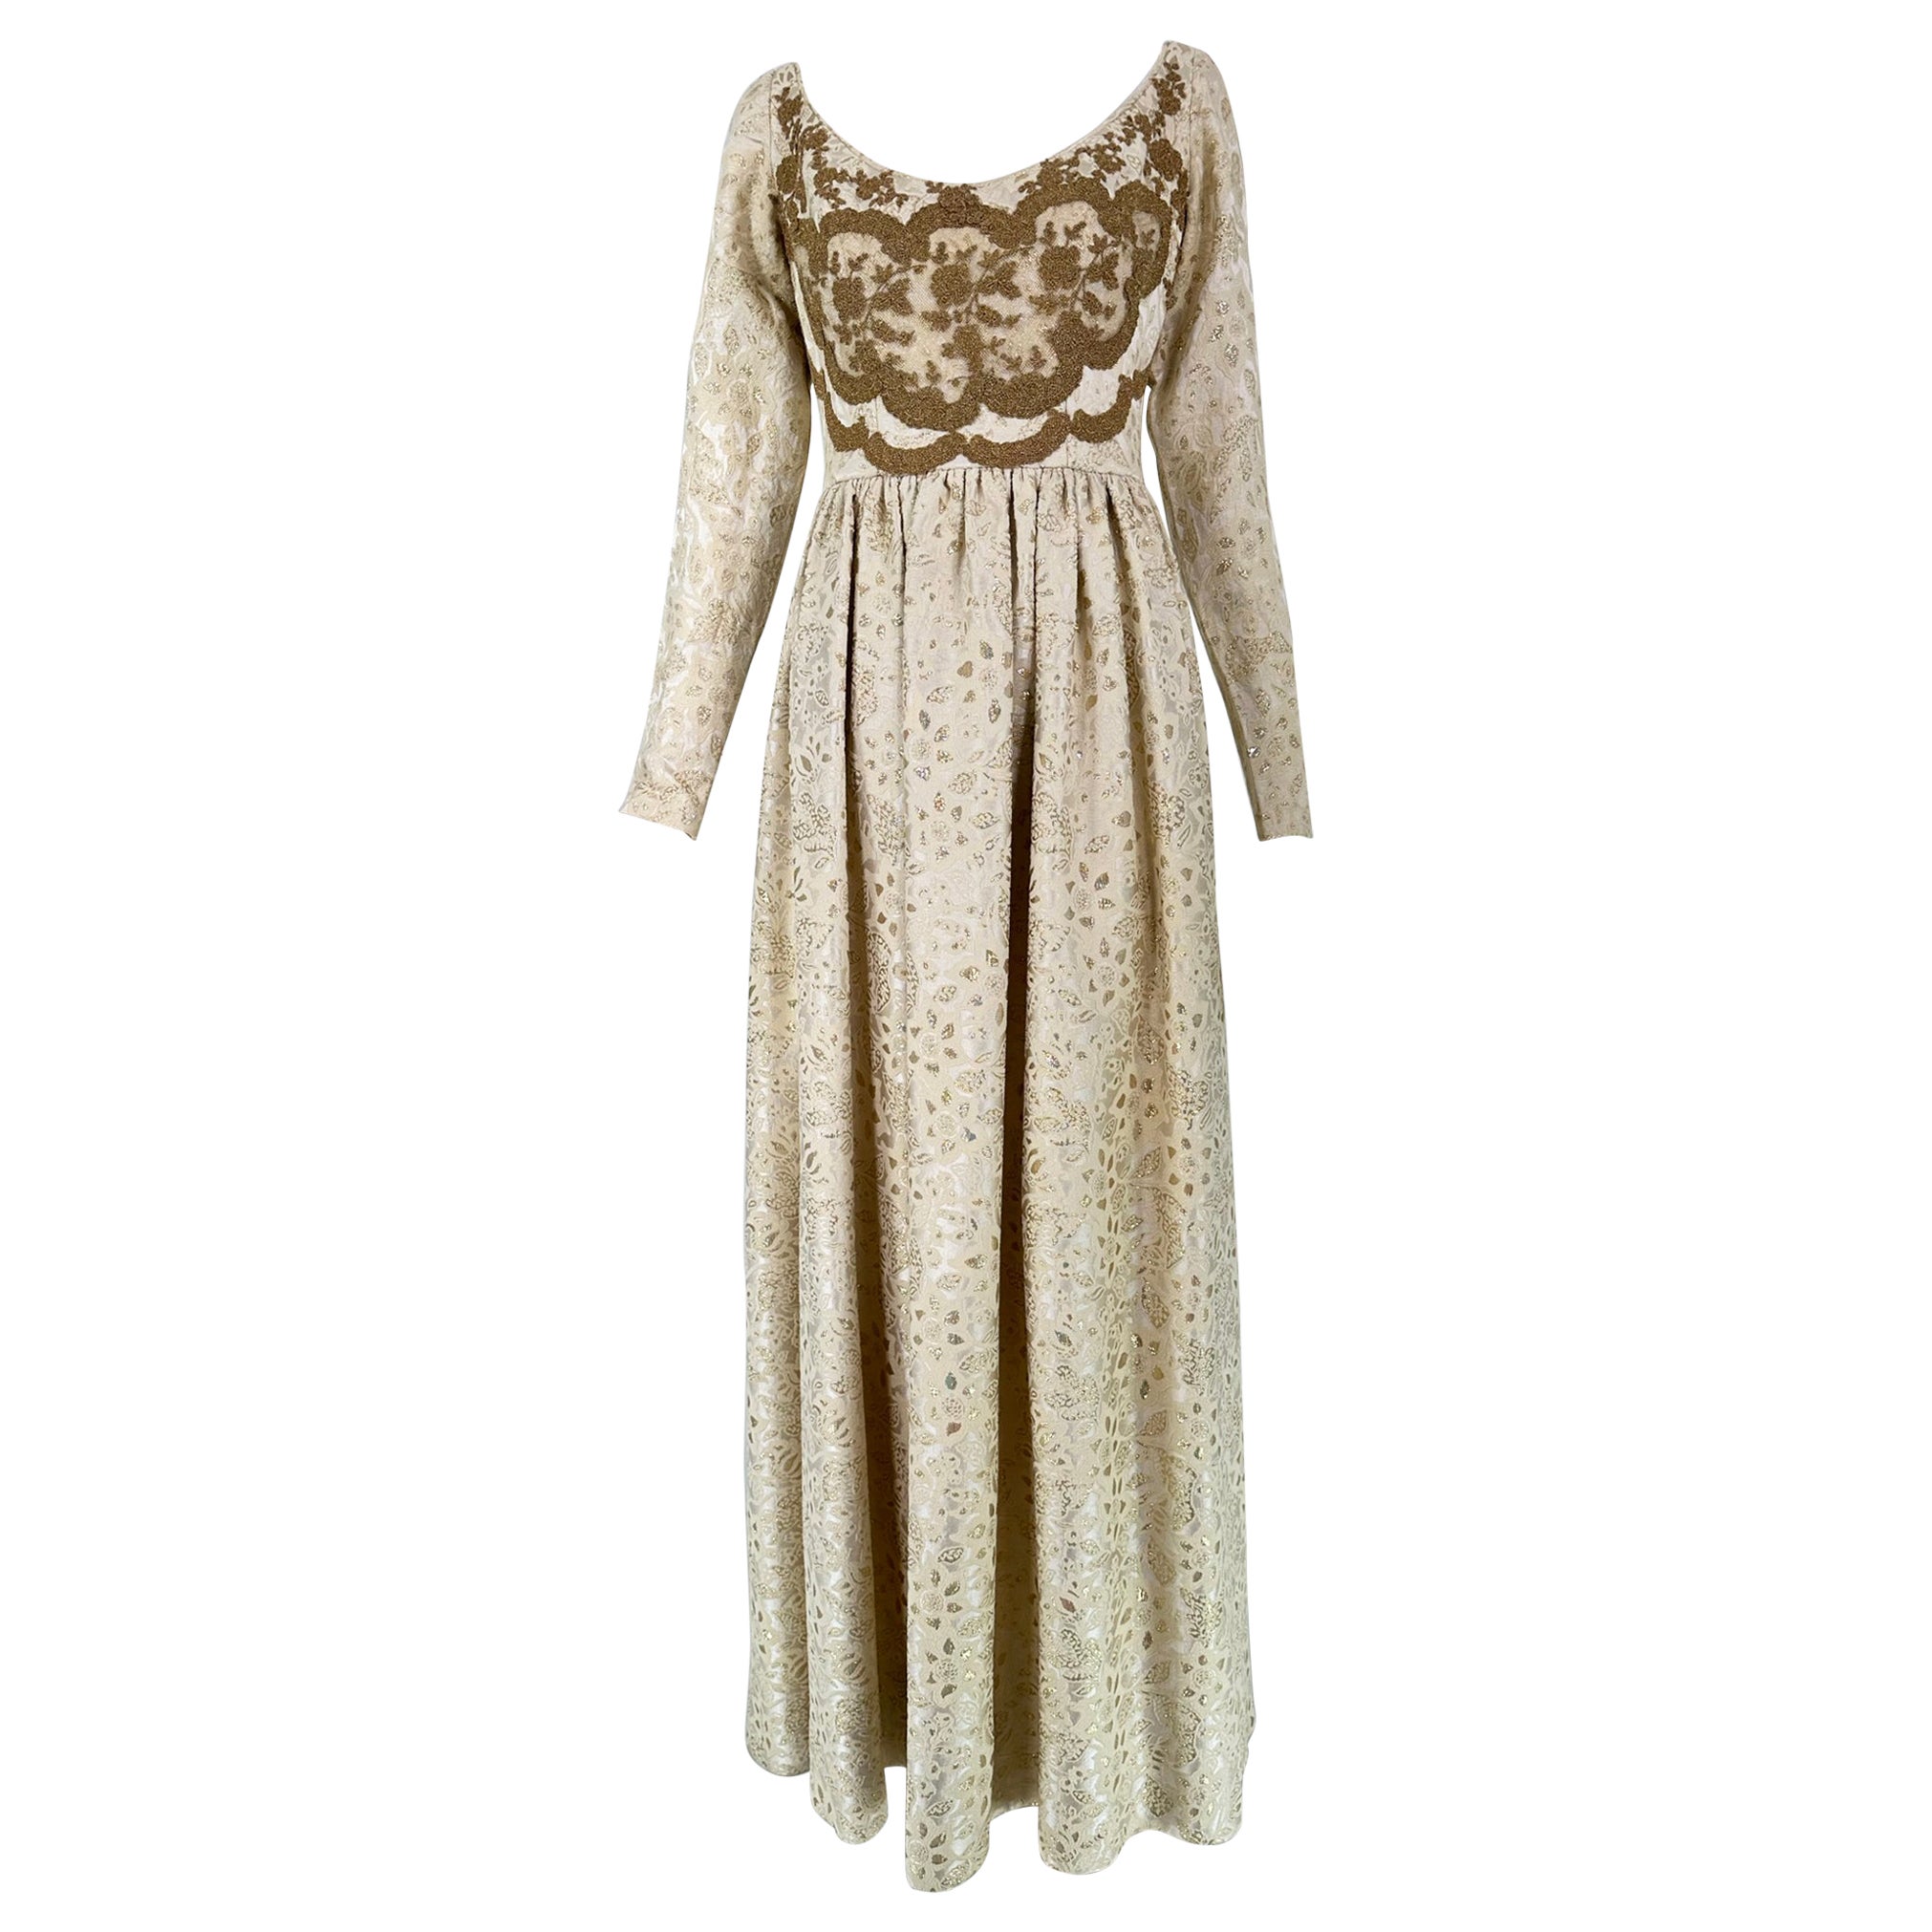 Galitizne Couture Kleid im Renaissance-Stil in Creme & Gold Metallic-Brokat 1970er Jahre